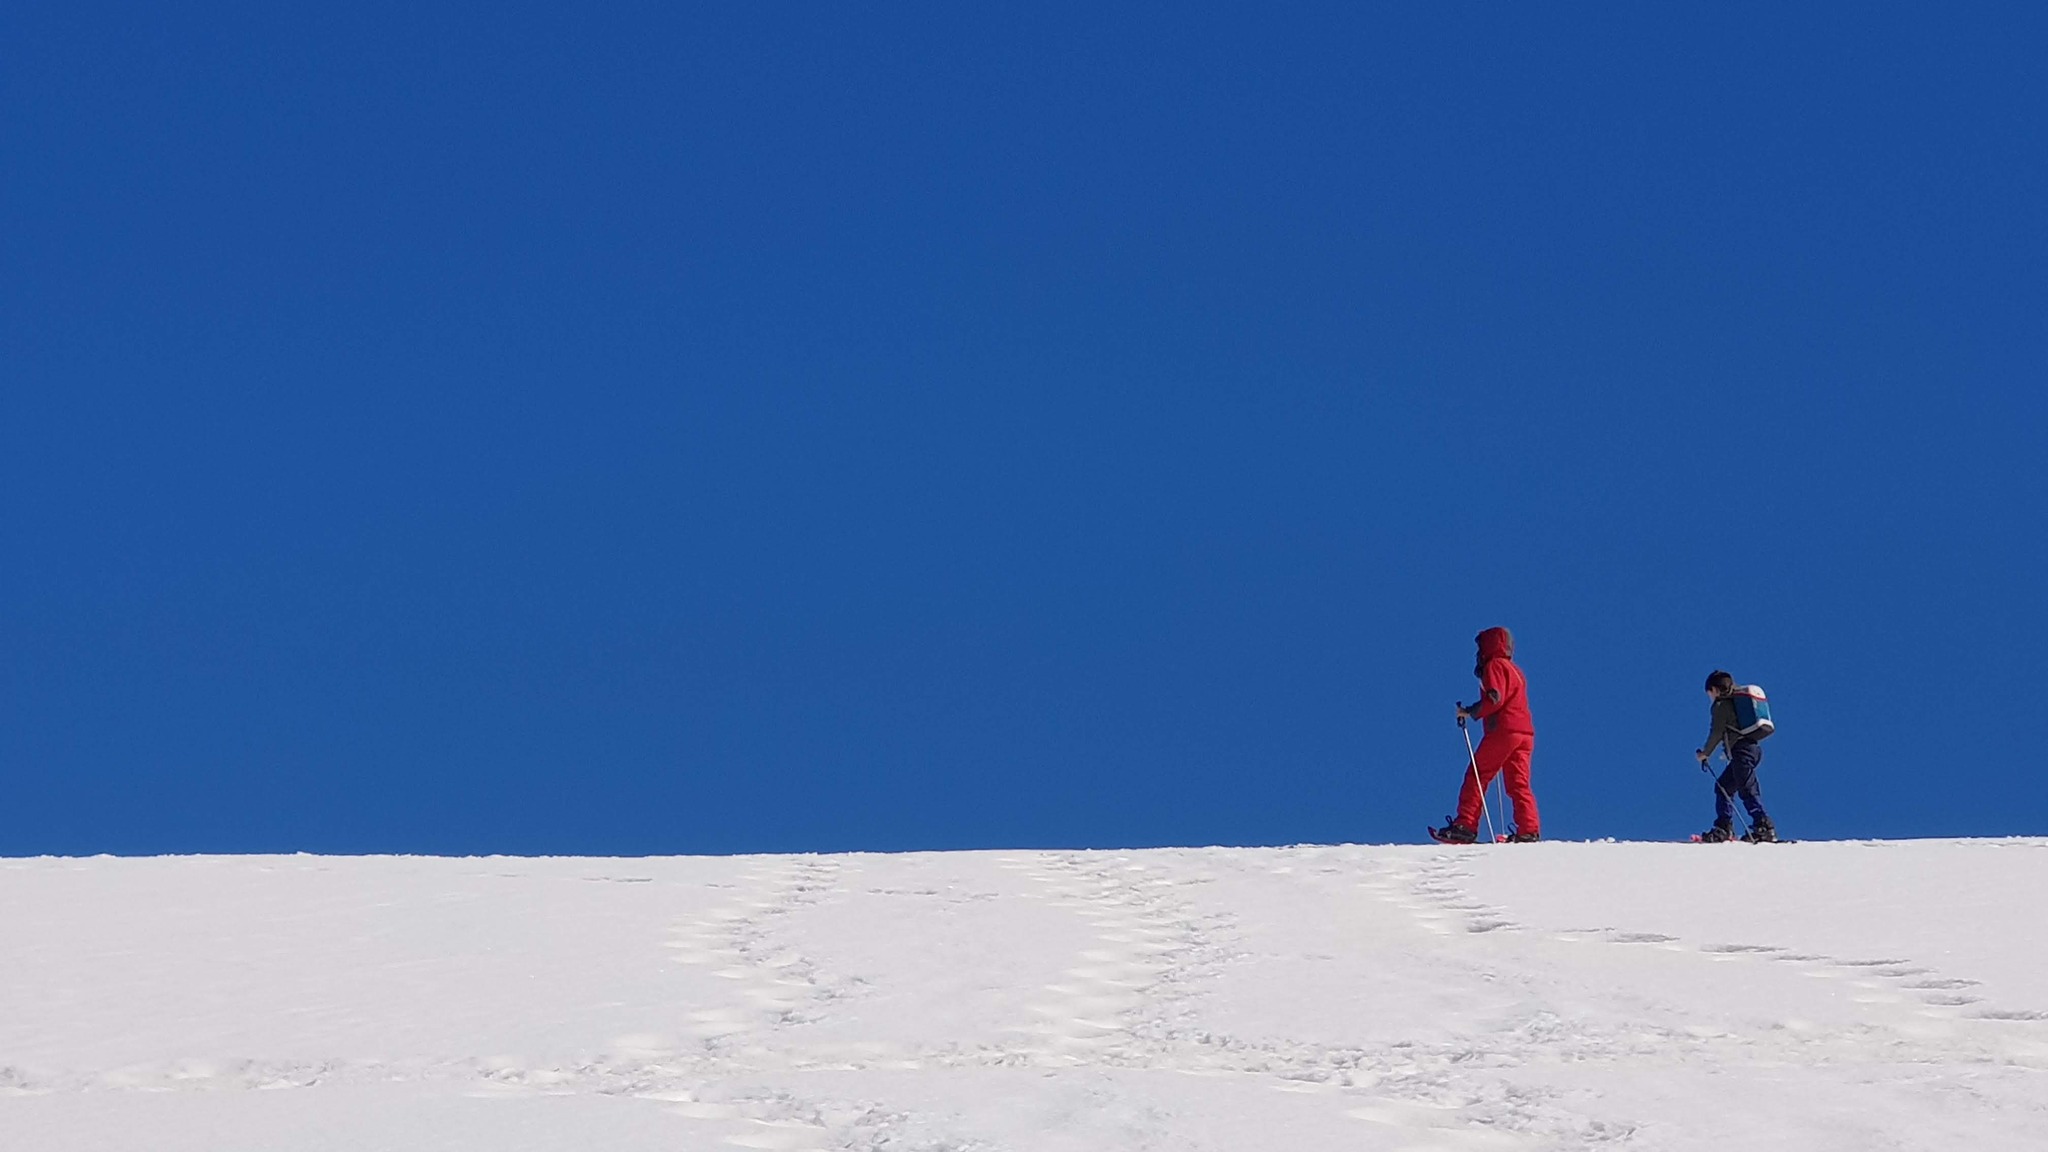 Paesaggi invernali sull'Altopiano di Asiago